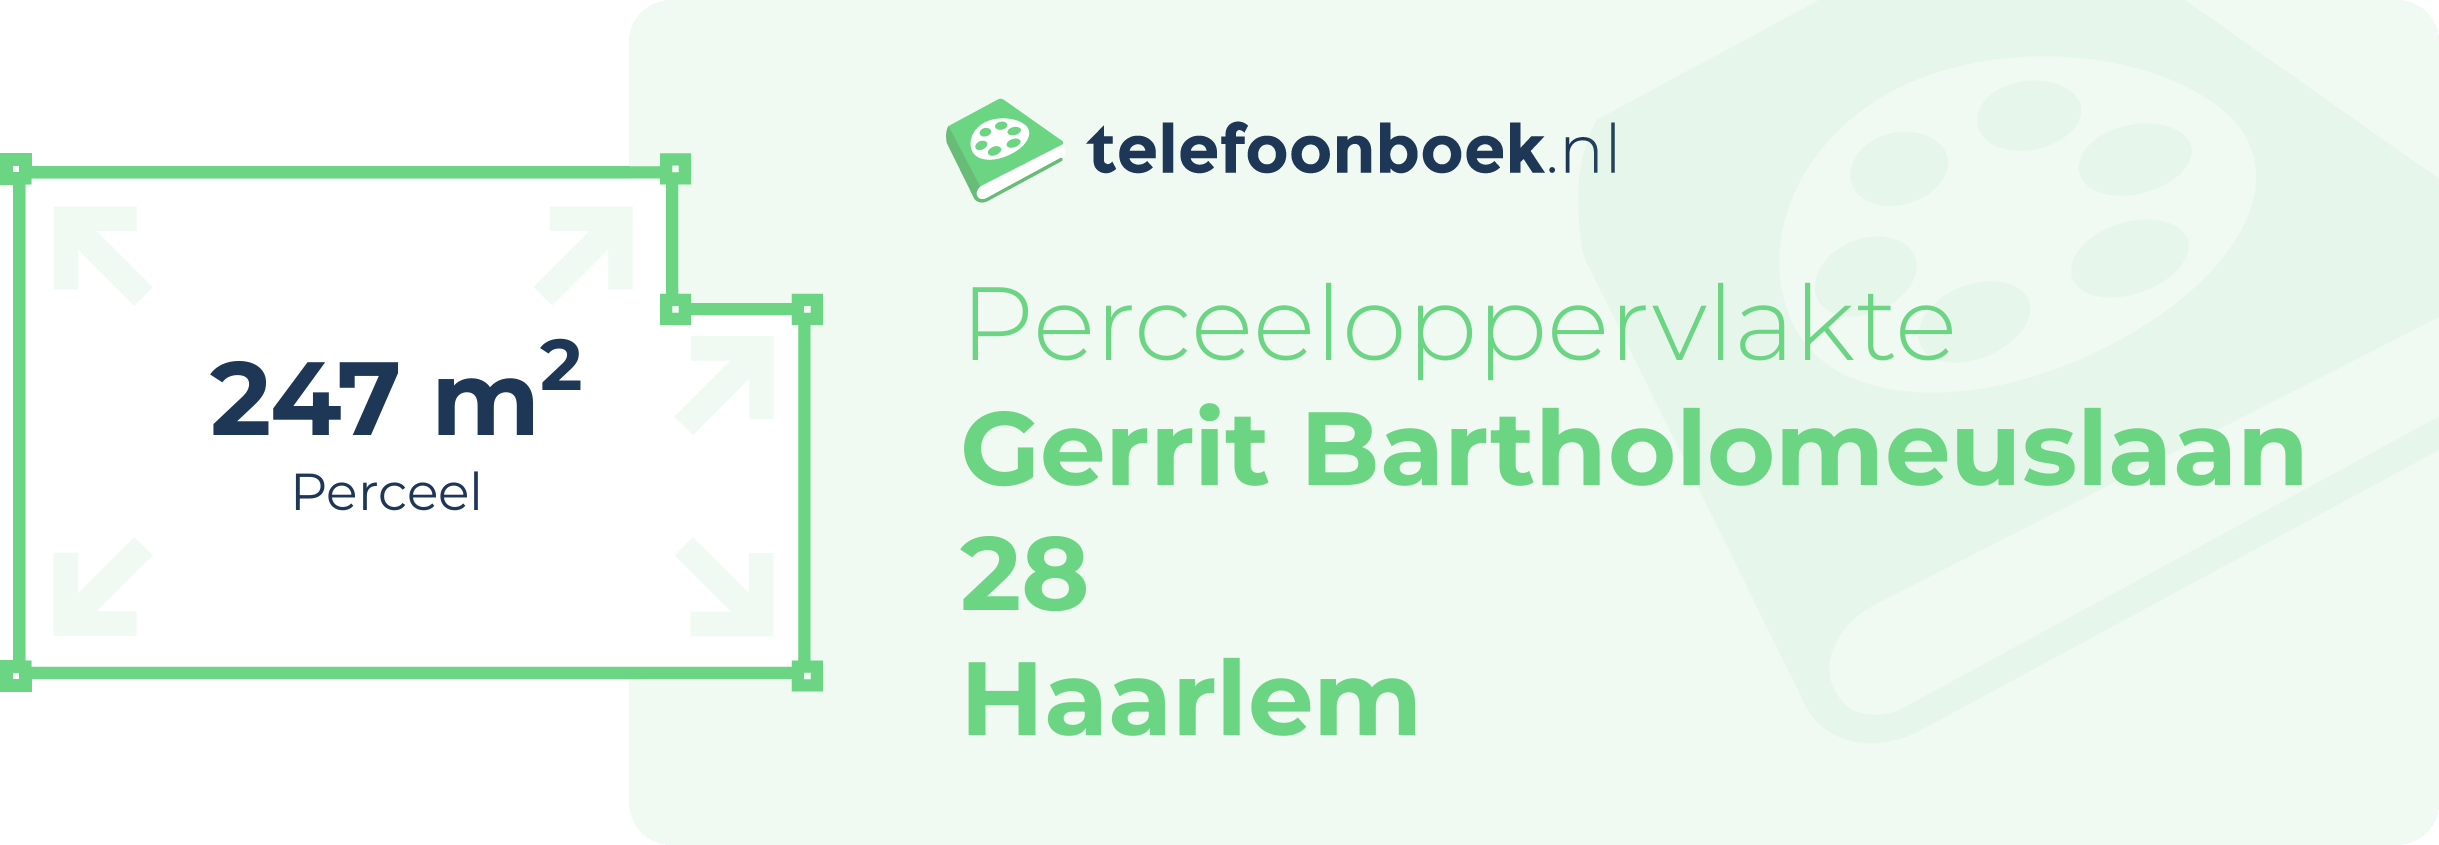 Perceeloppervlakte Gerrit Bartholomeuslaan 28 Haarlem